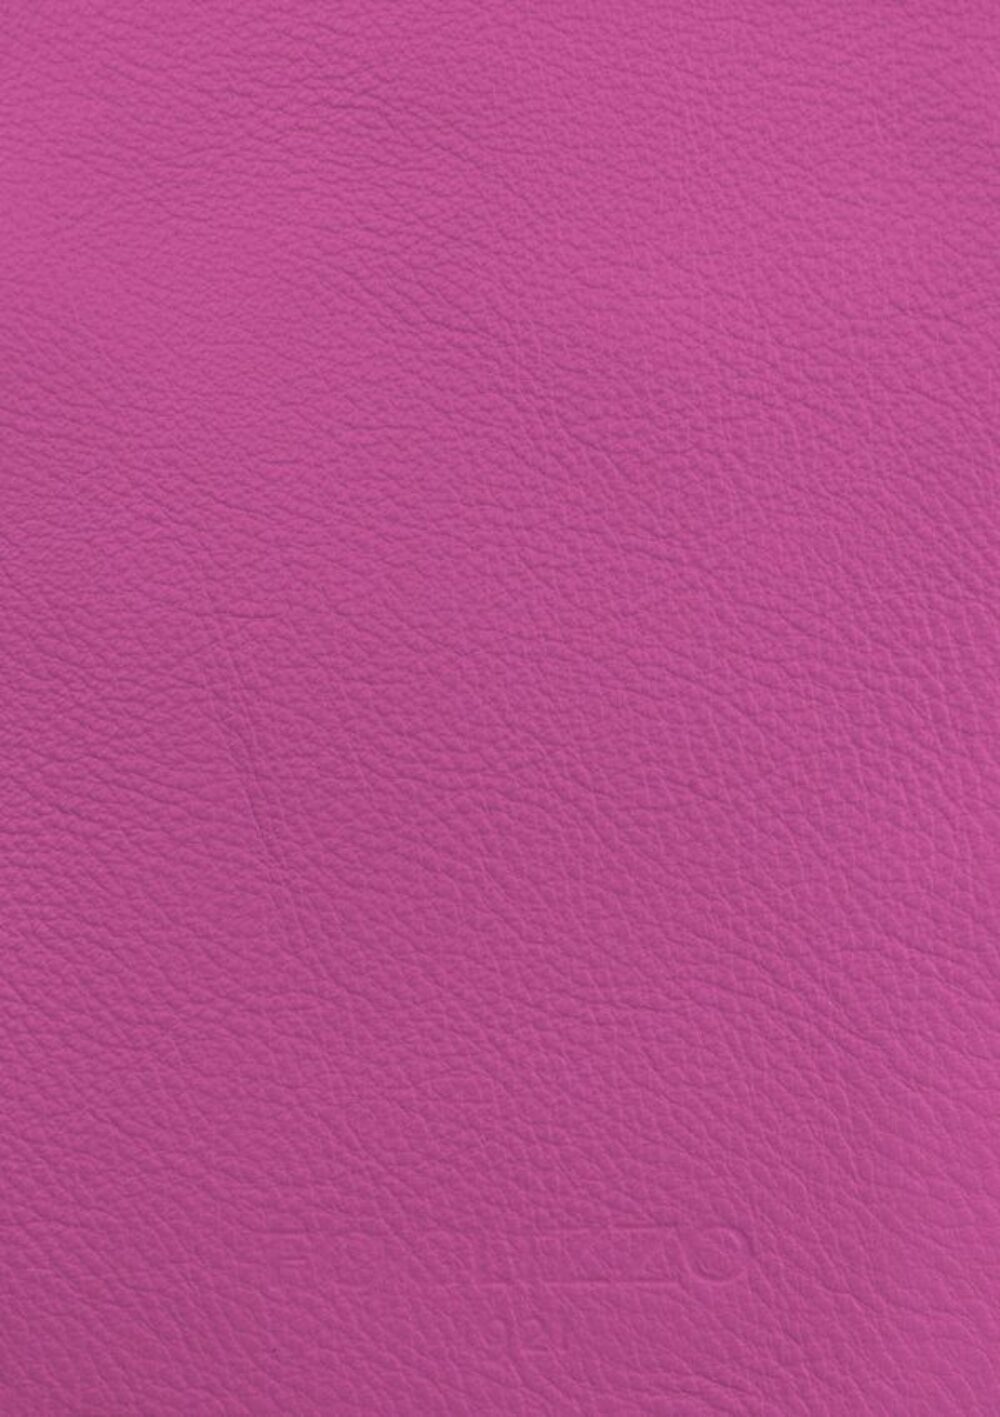 Diseño de lujo y alfombras de alta gama hechas a medida • Fuscia Pink Jade